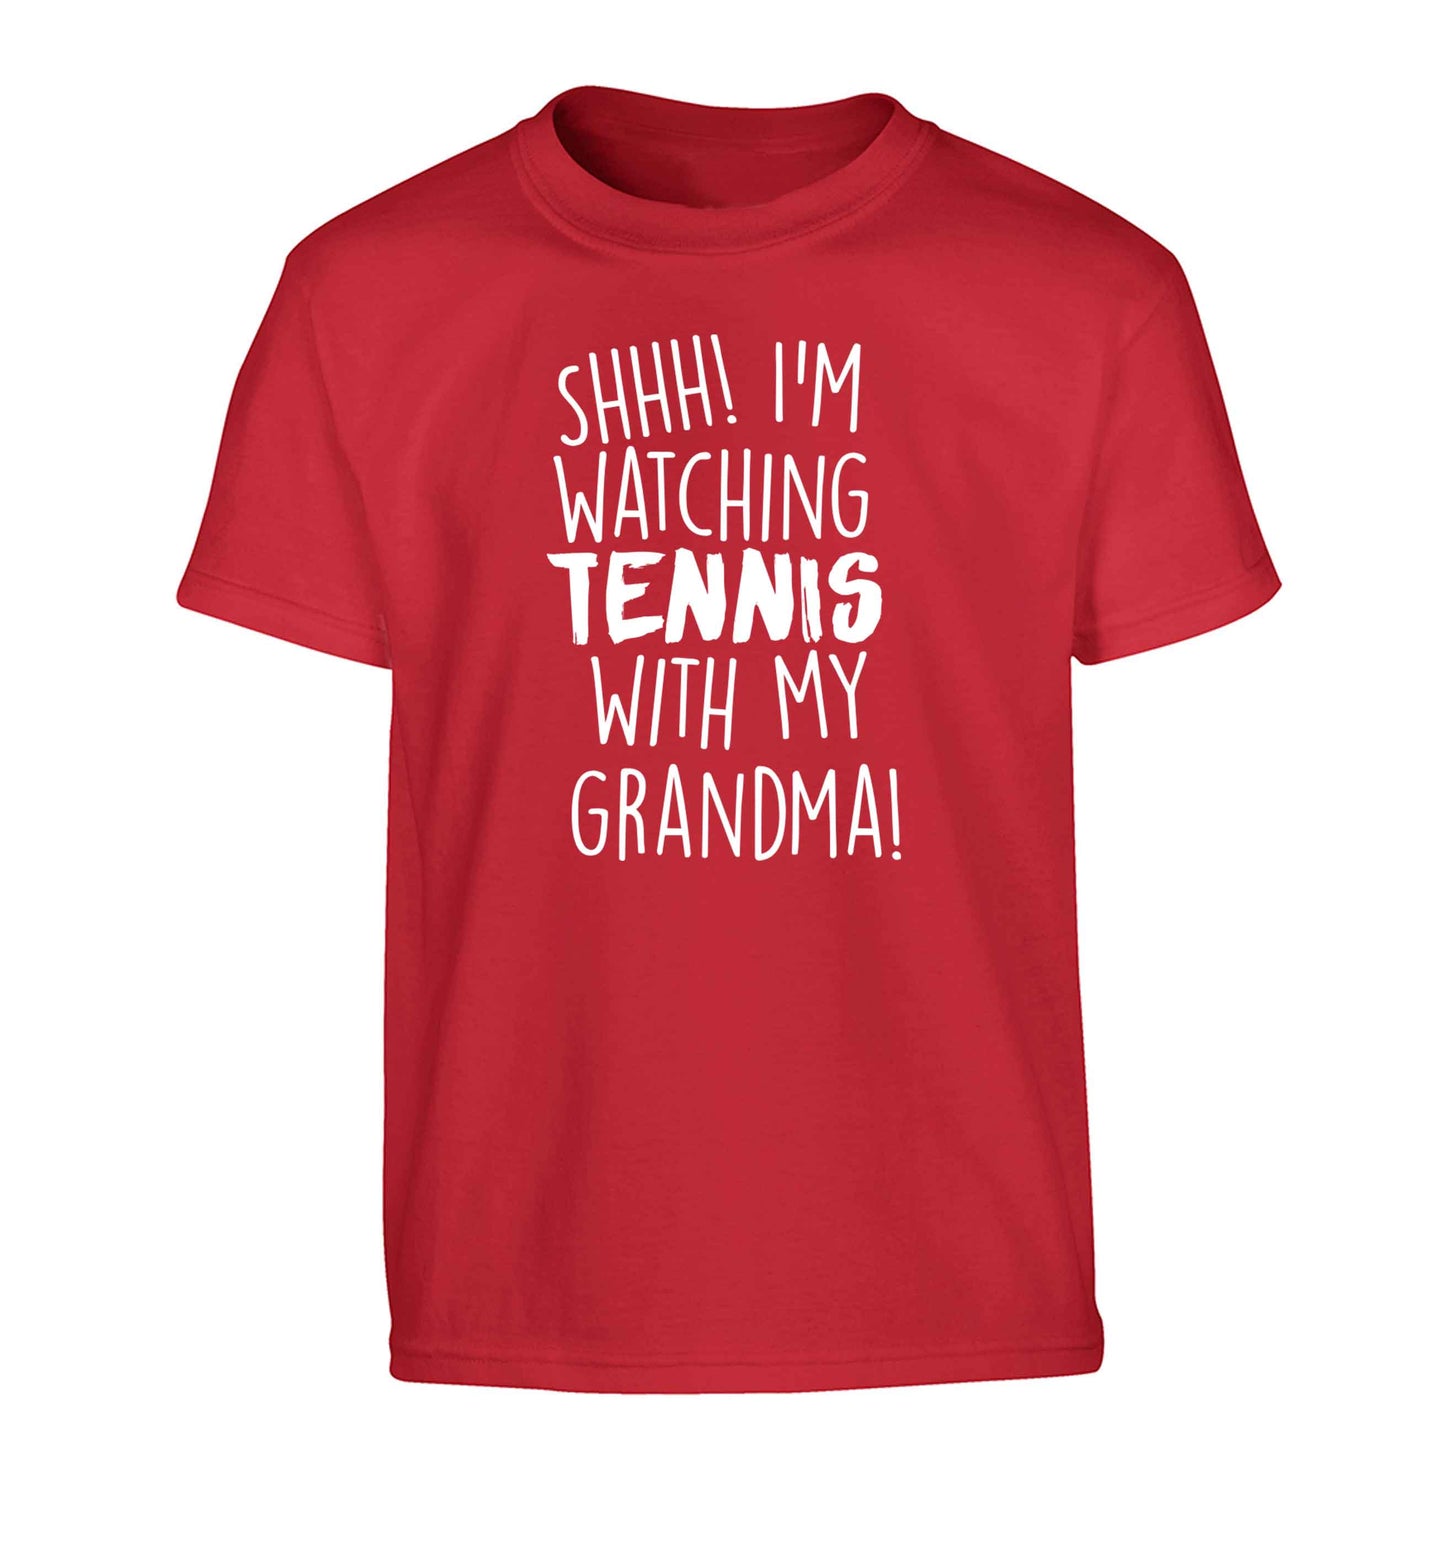 Shh! I'm watching tennis with my grandma! Children's red Tshirt 12-13 Years